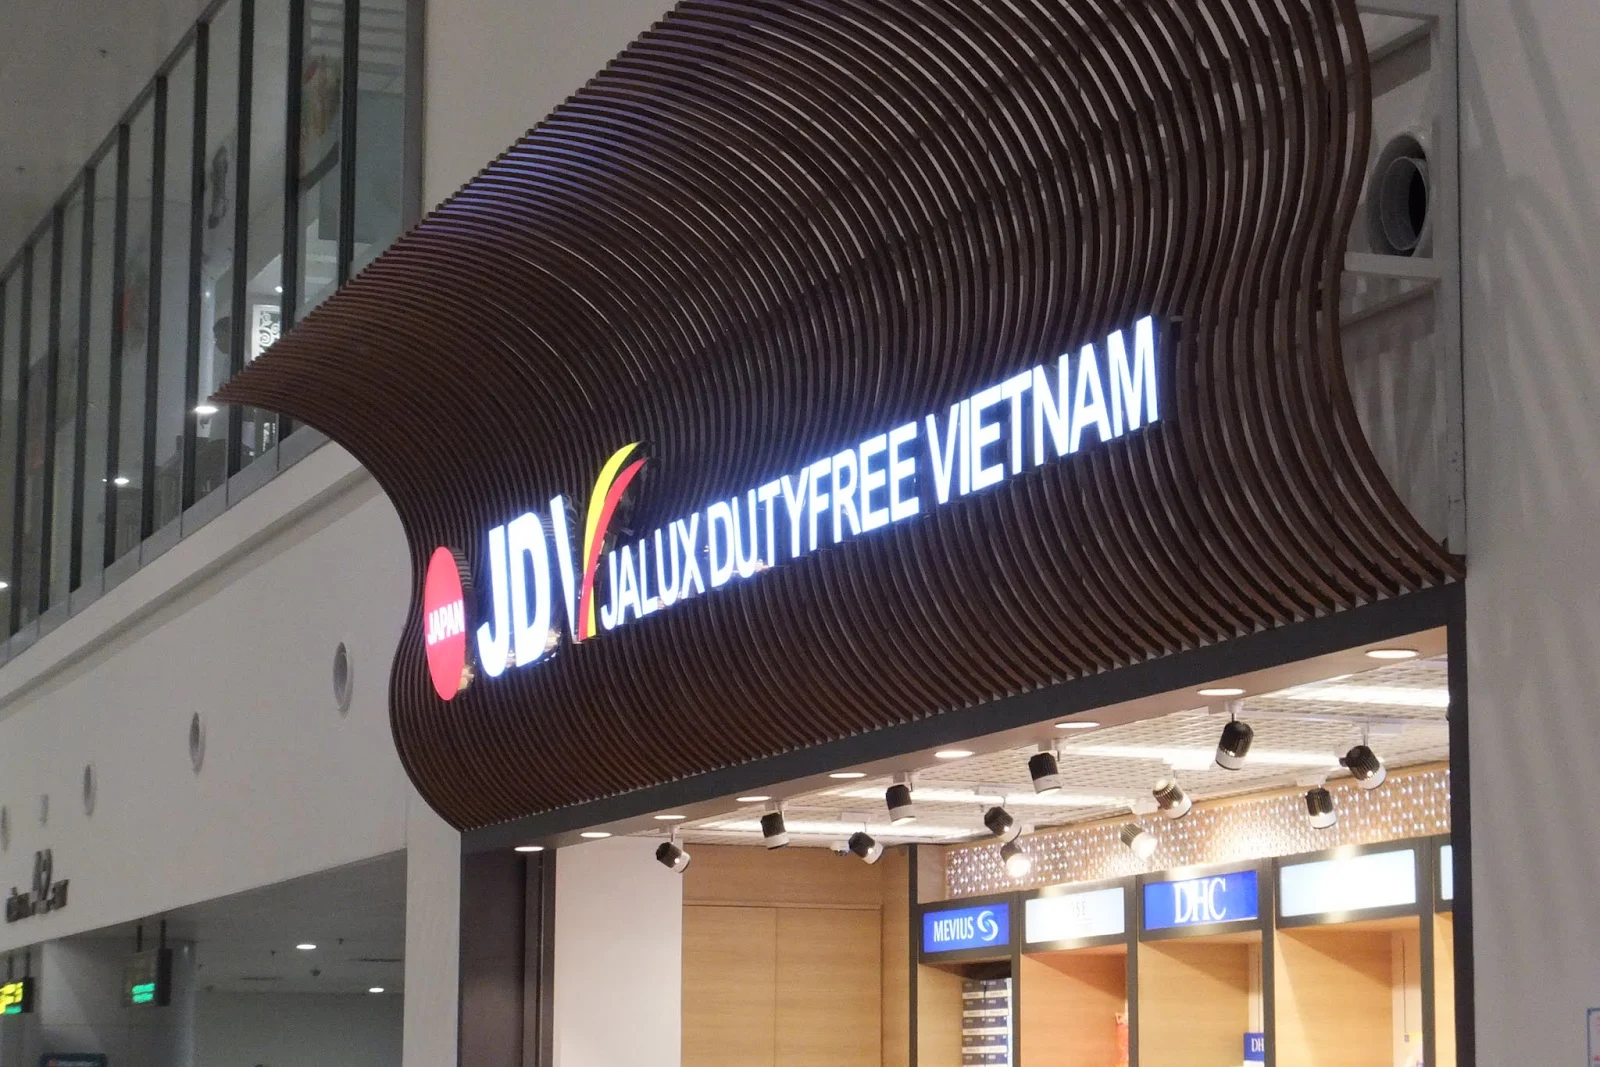 jalux-dutyfree-vietnam